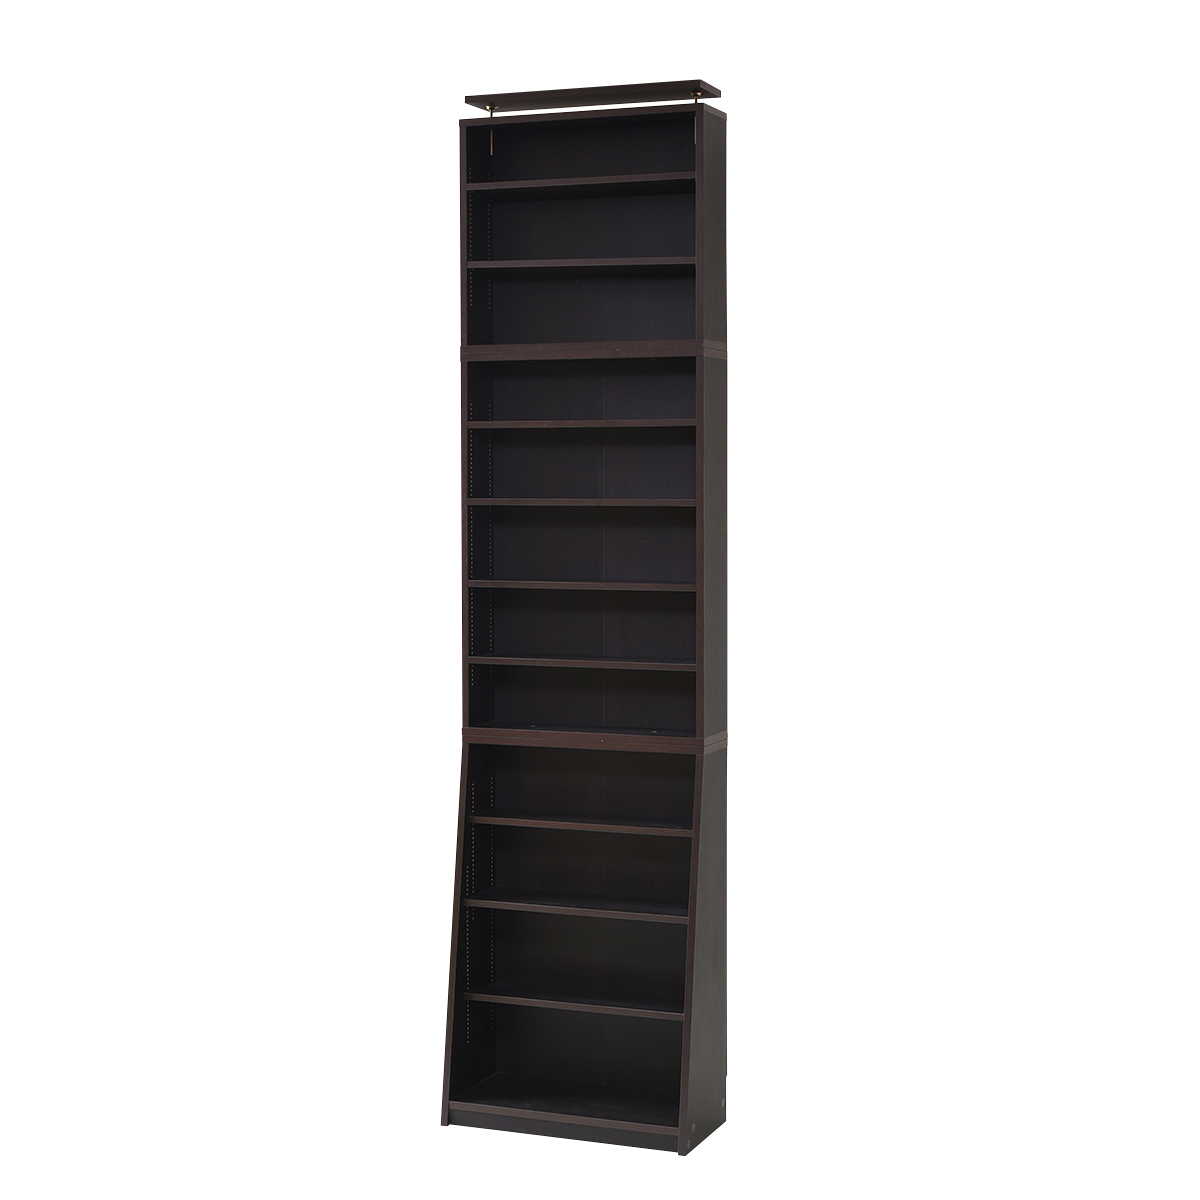 1cm pitch книжный шкаф тонкий большая вместимость библиотека книга@ подставка сверху класть комплект темно-коричневый 